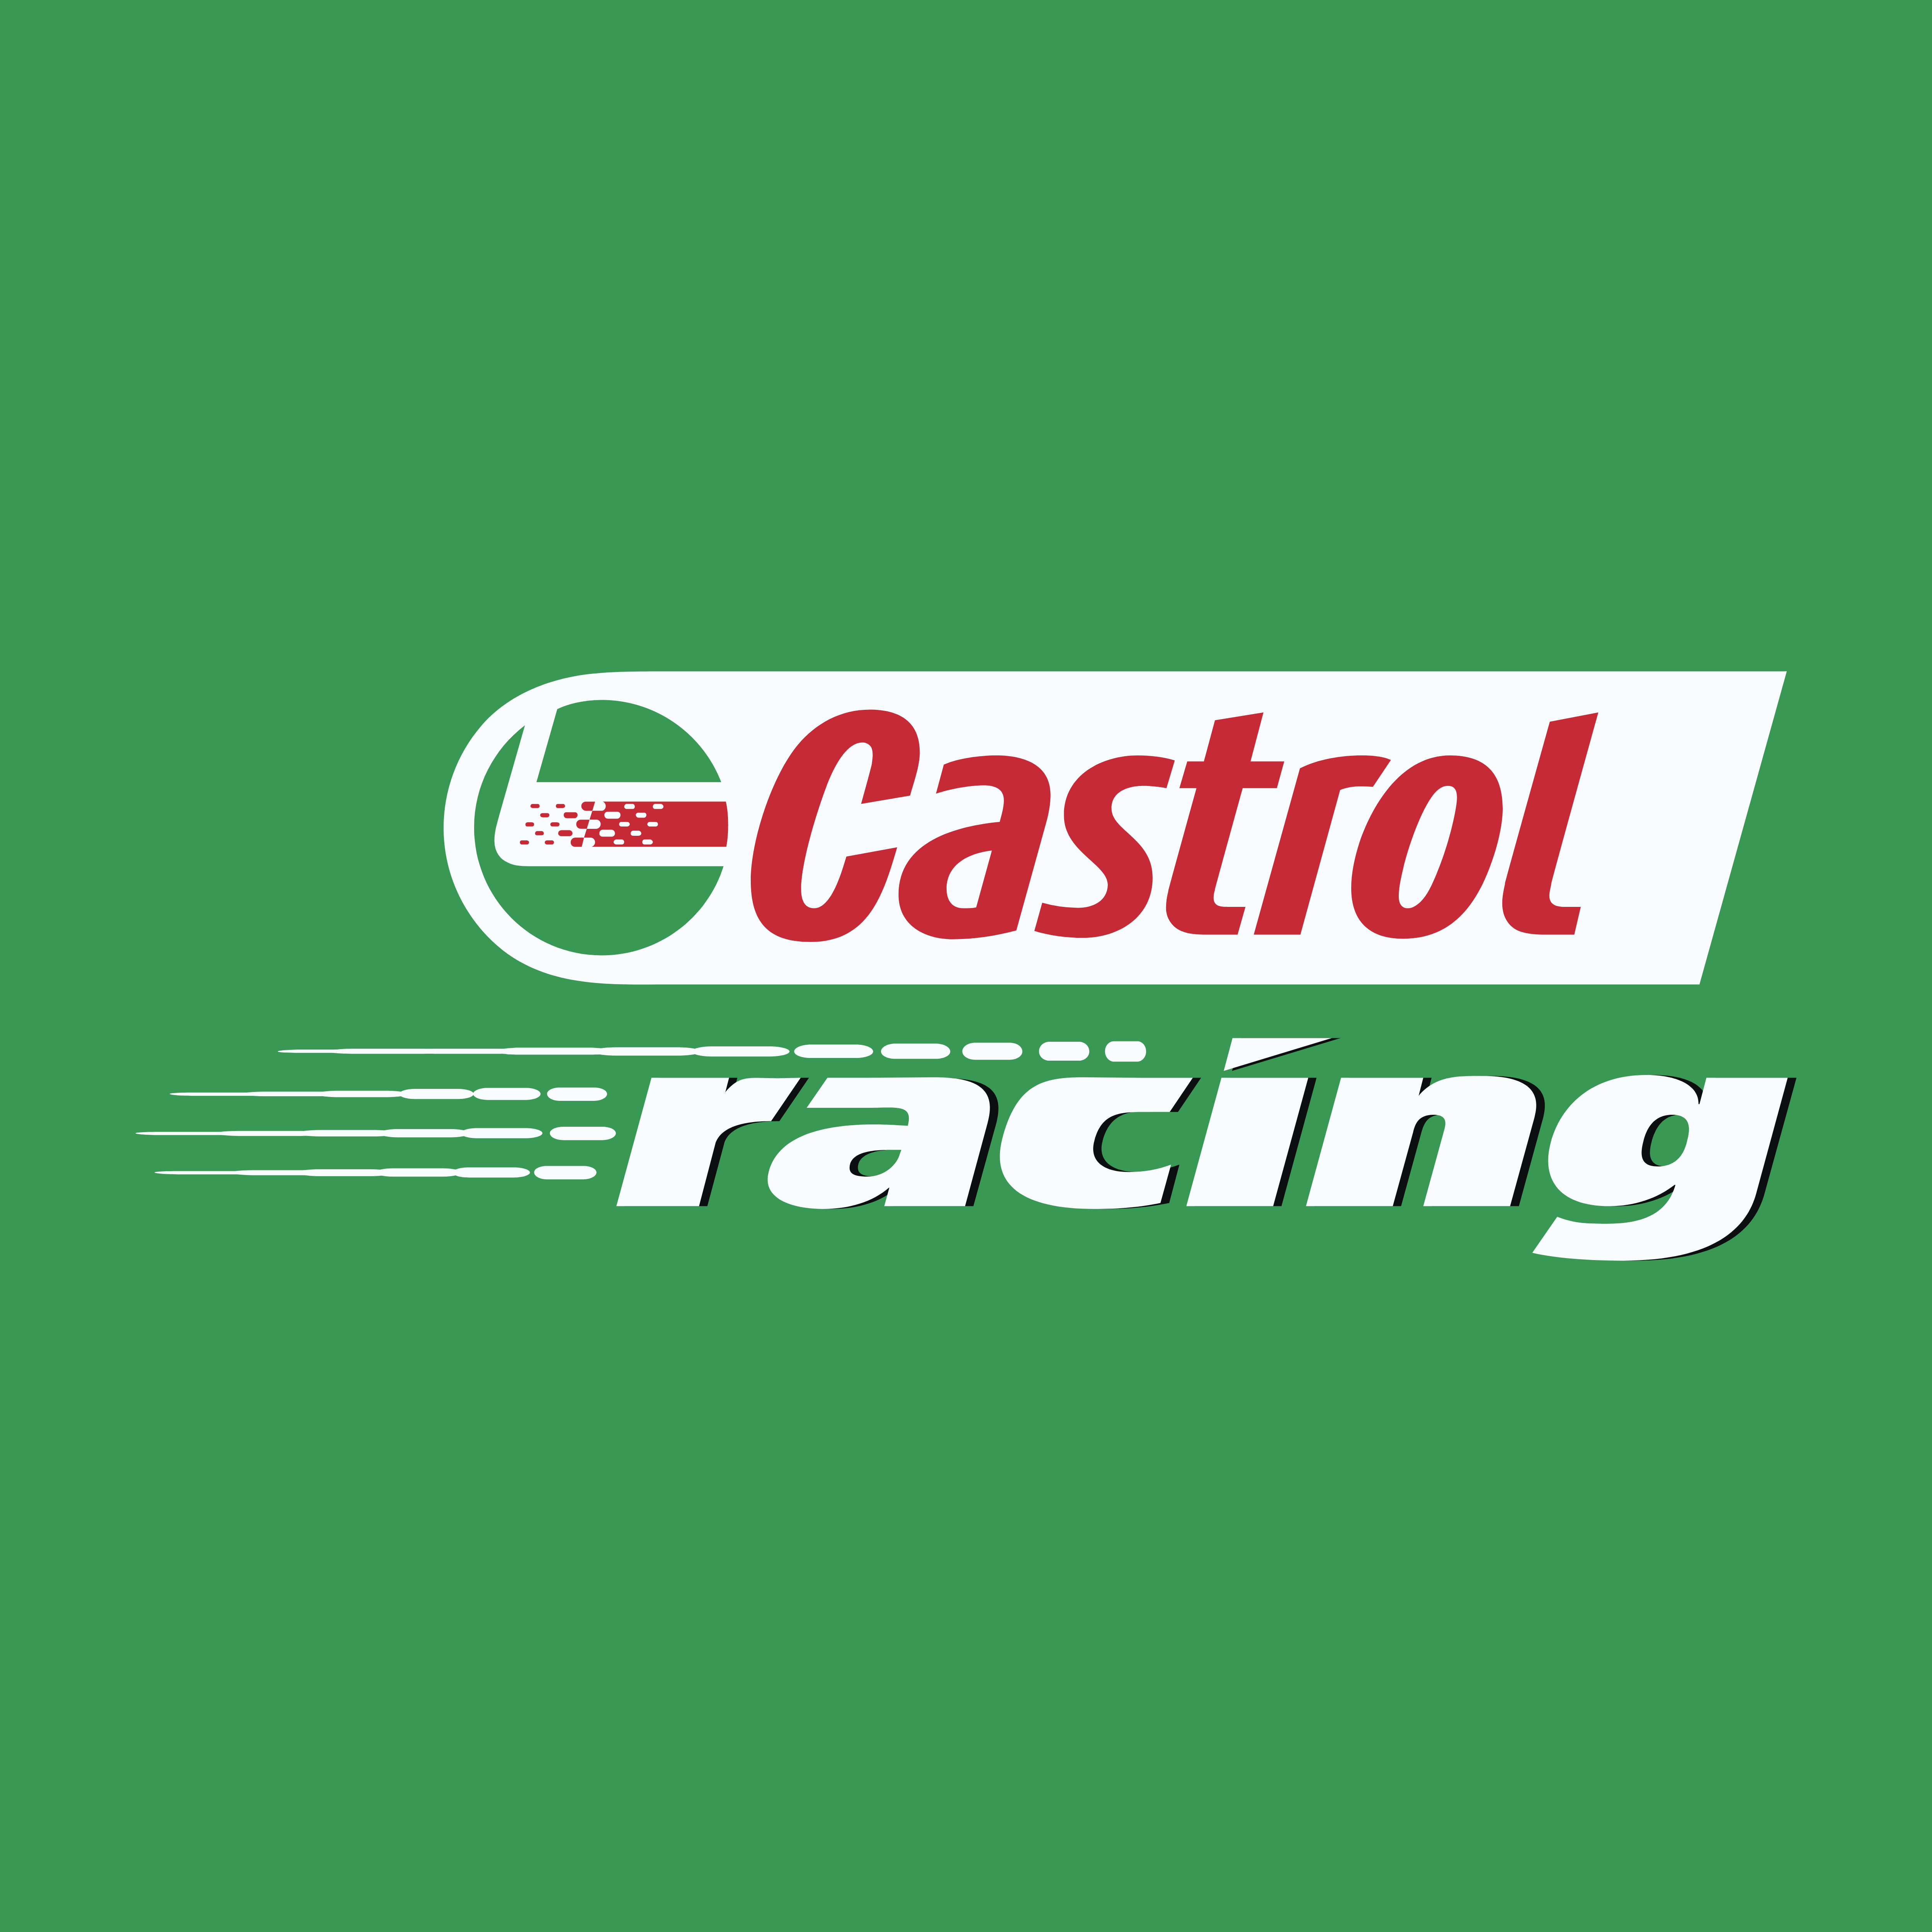 Castrol Racing logo. Castril Racing logo. Castrol Oil logo. Castrol logo Castrol logo. Castrol ru